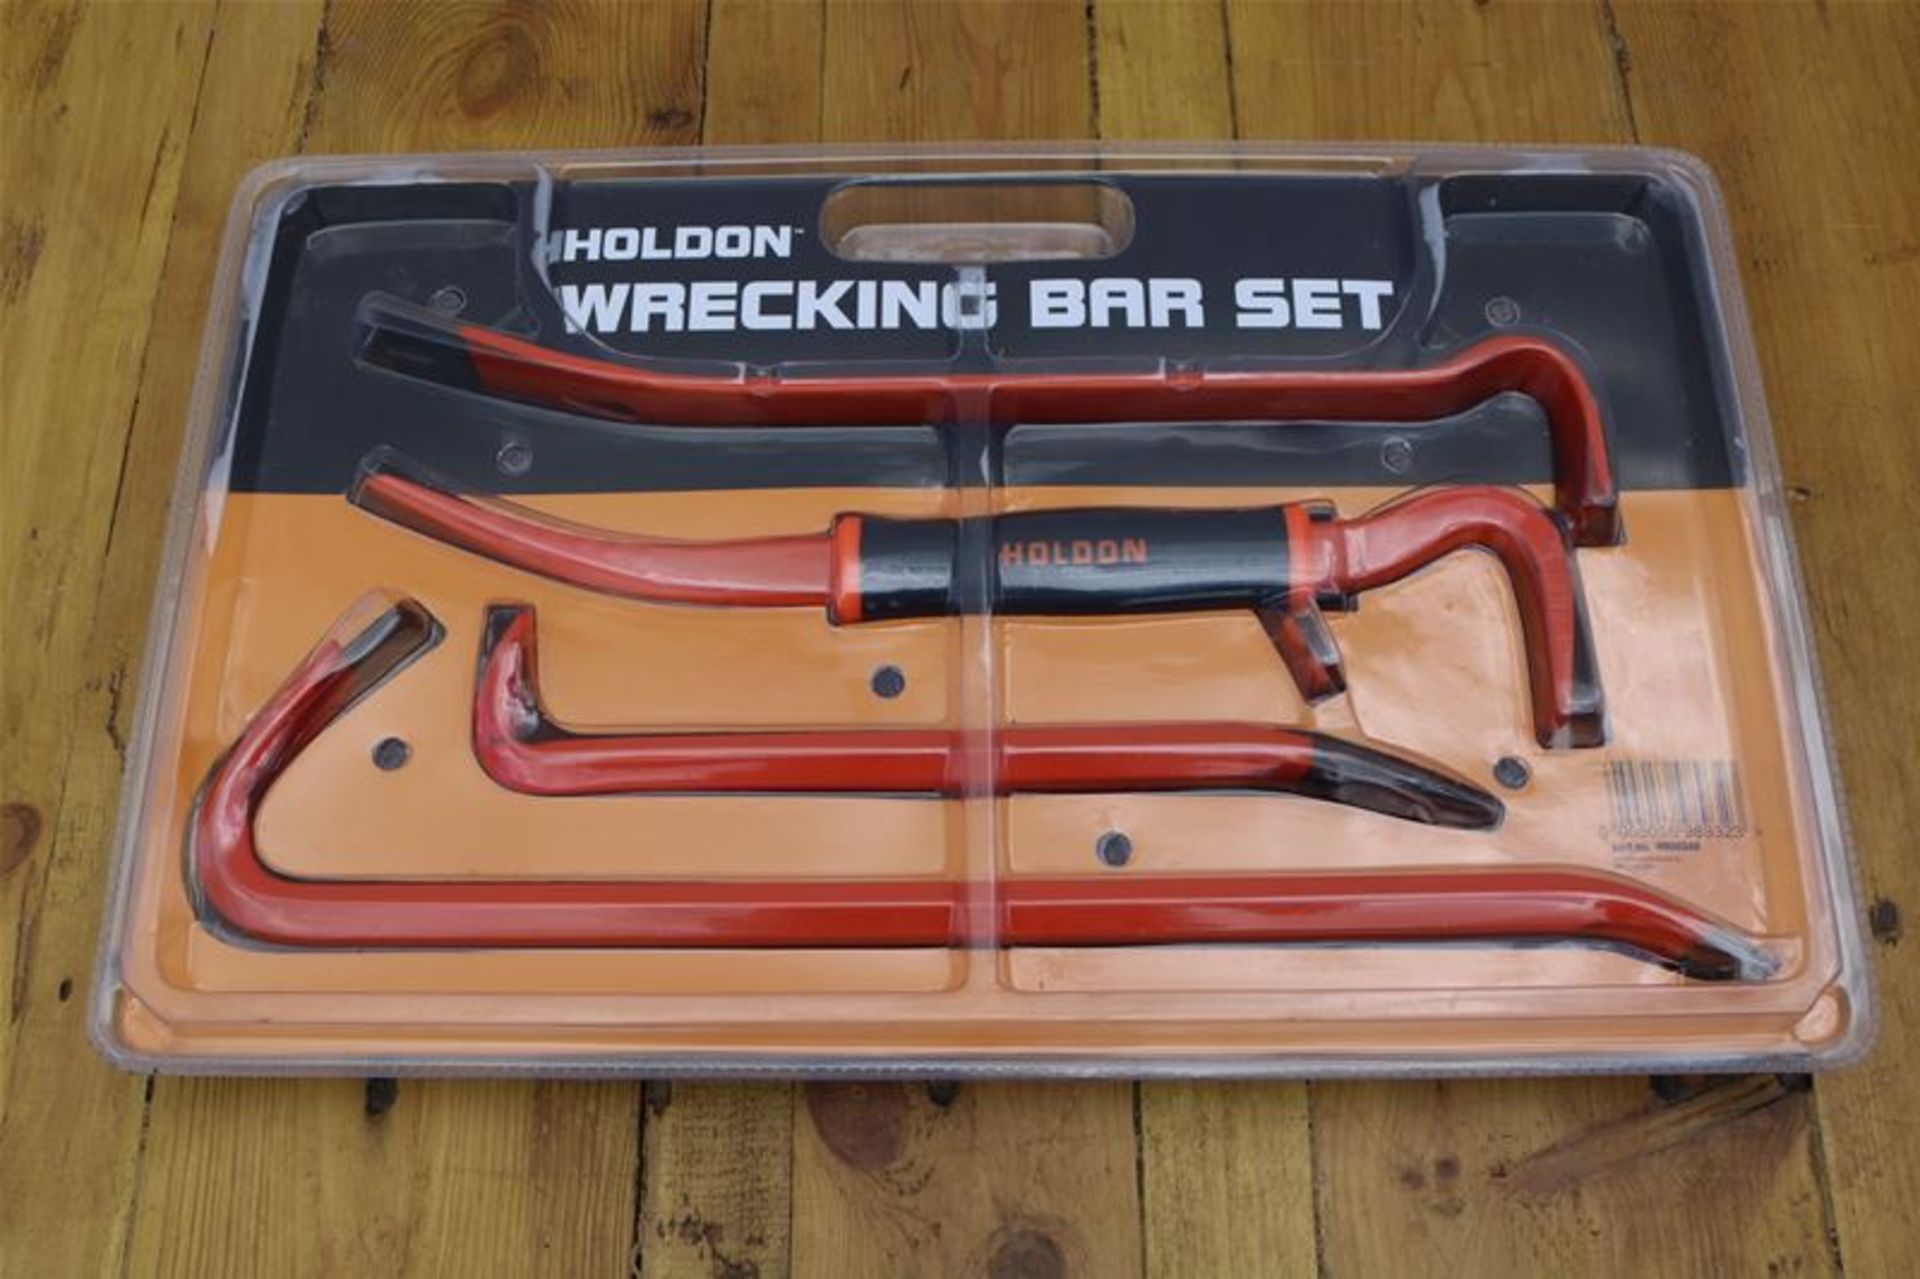 10 x HOLDON 5 Piece Wrecking Bar Set